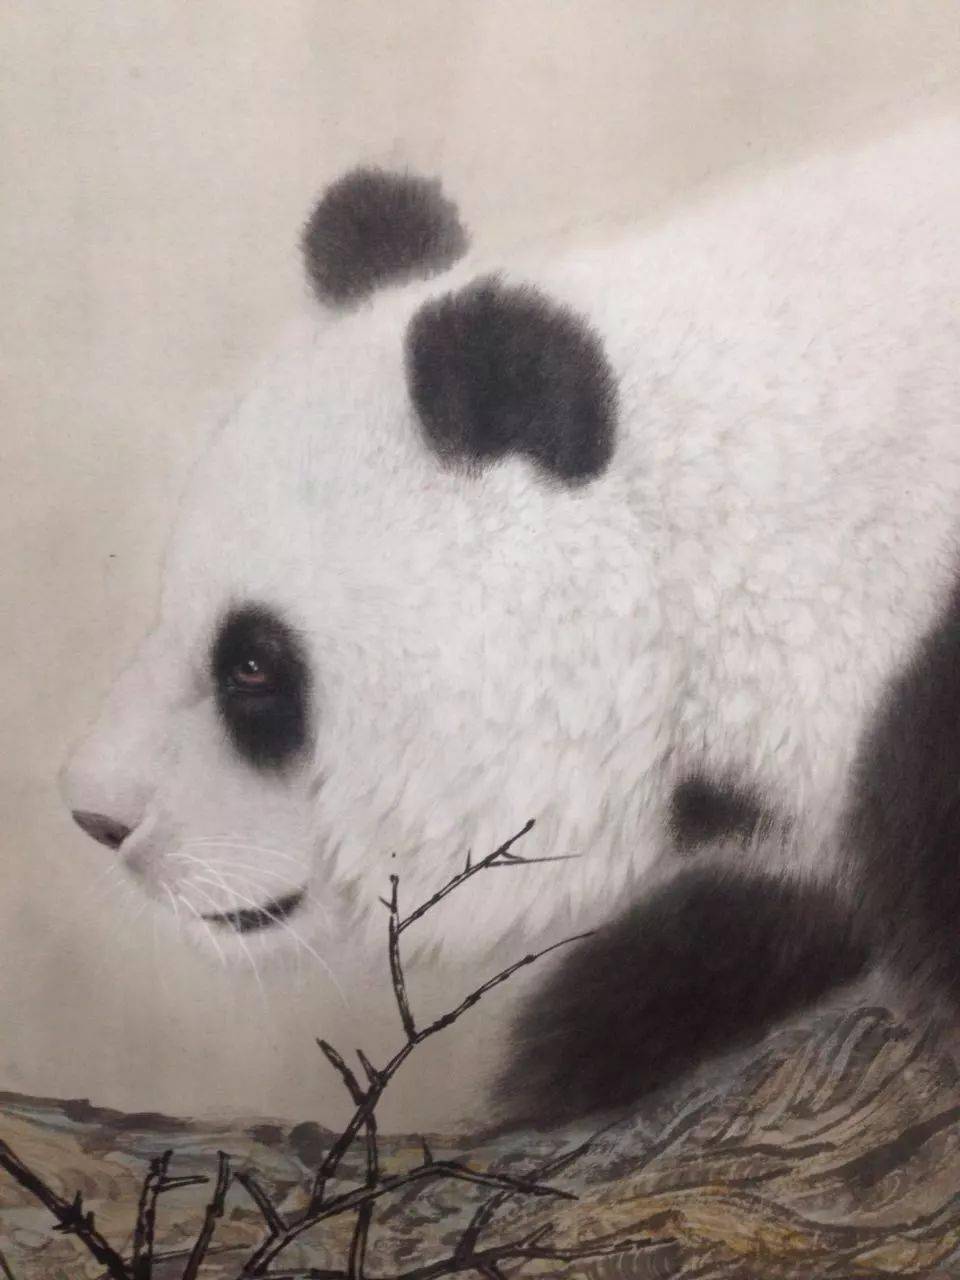 工笔画熊猫的画法步骤图片